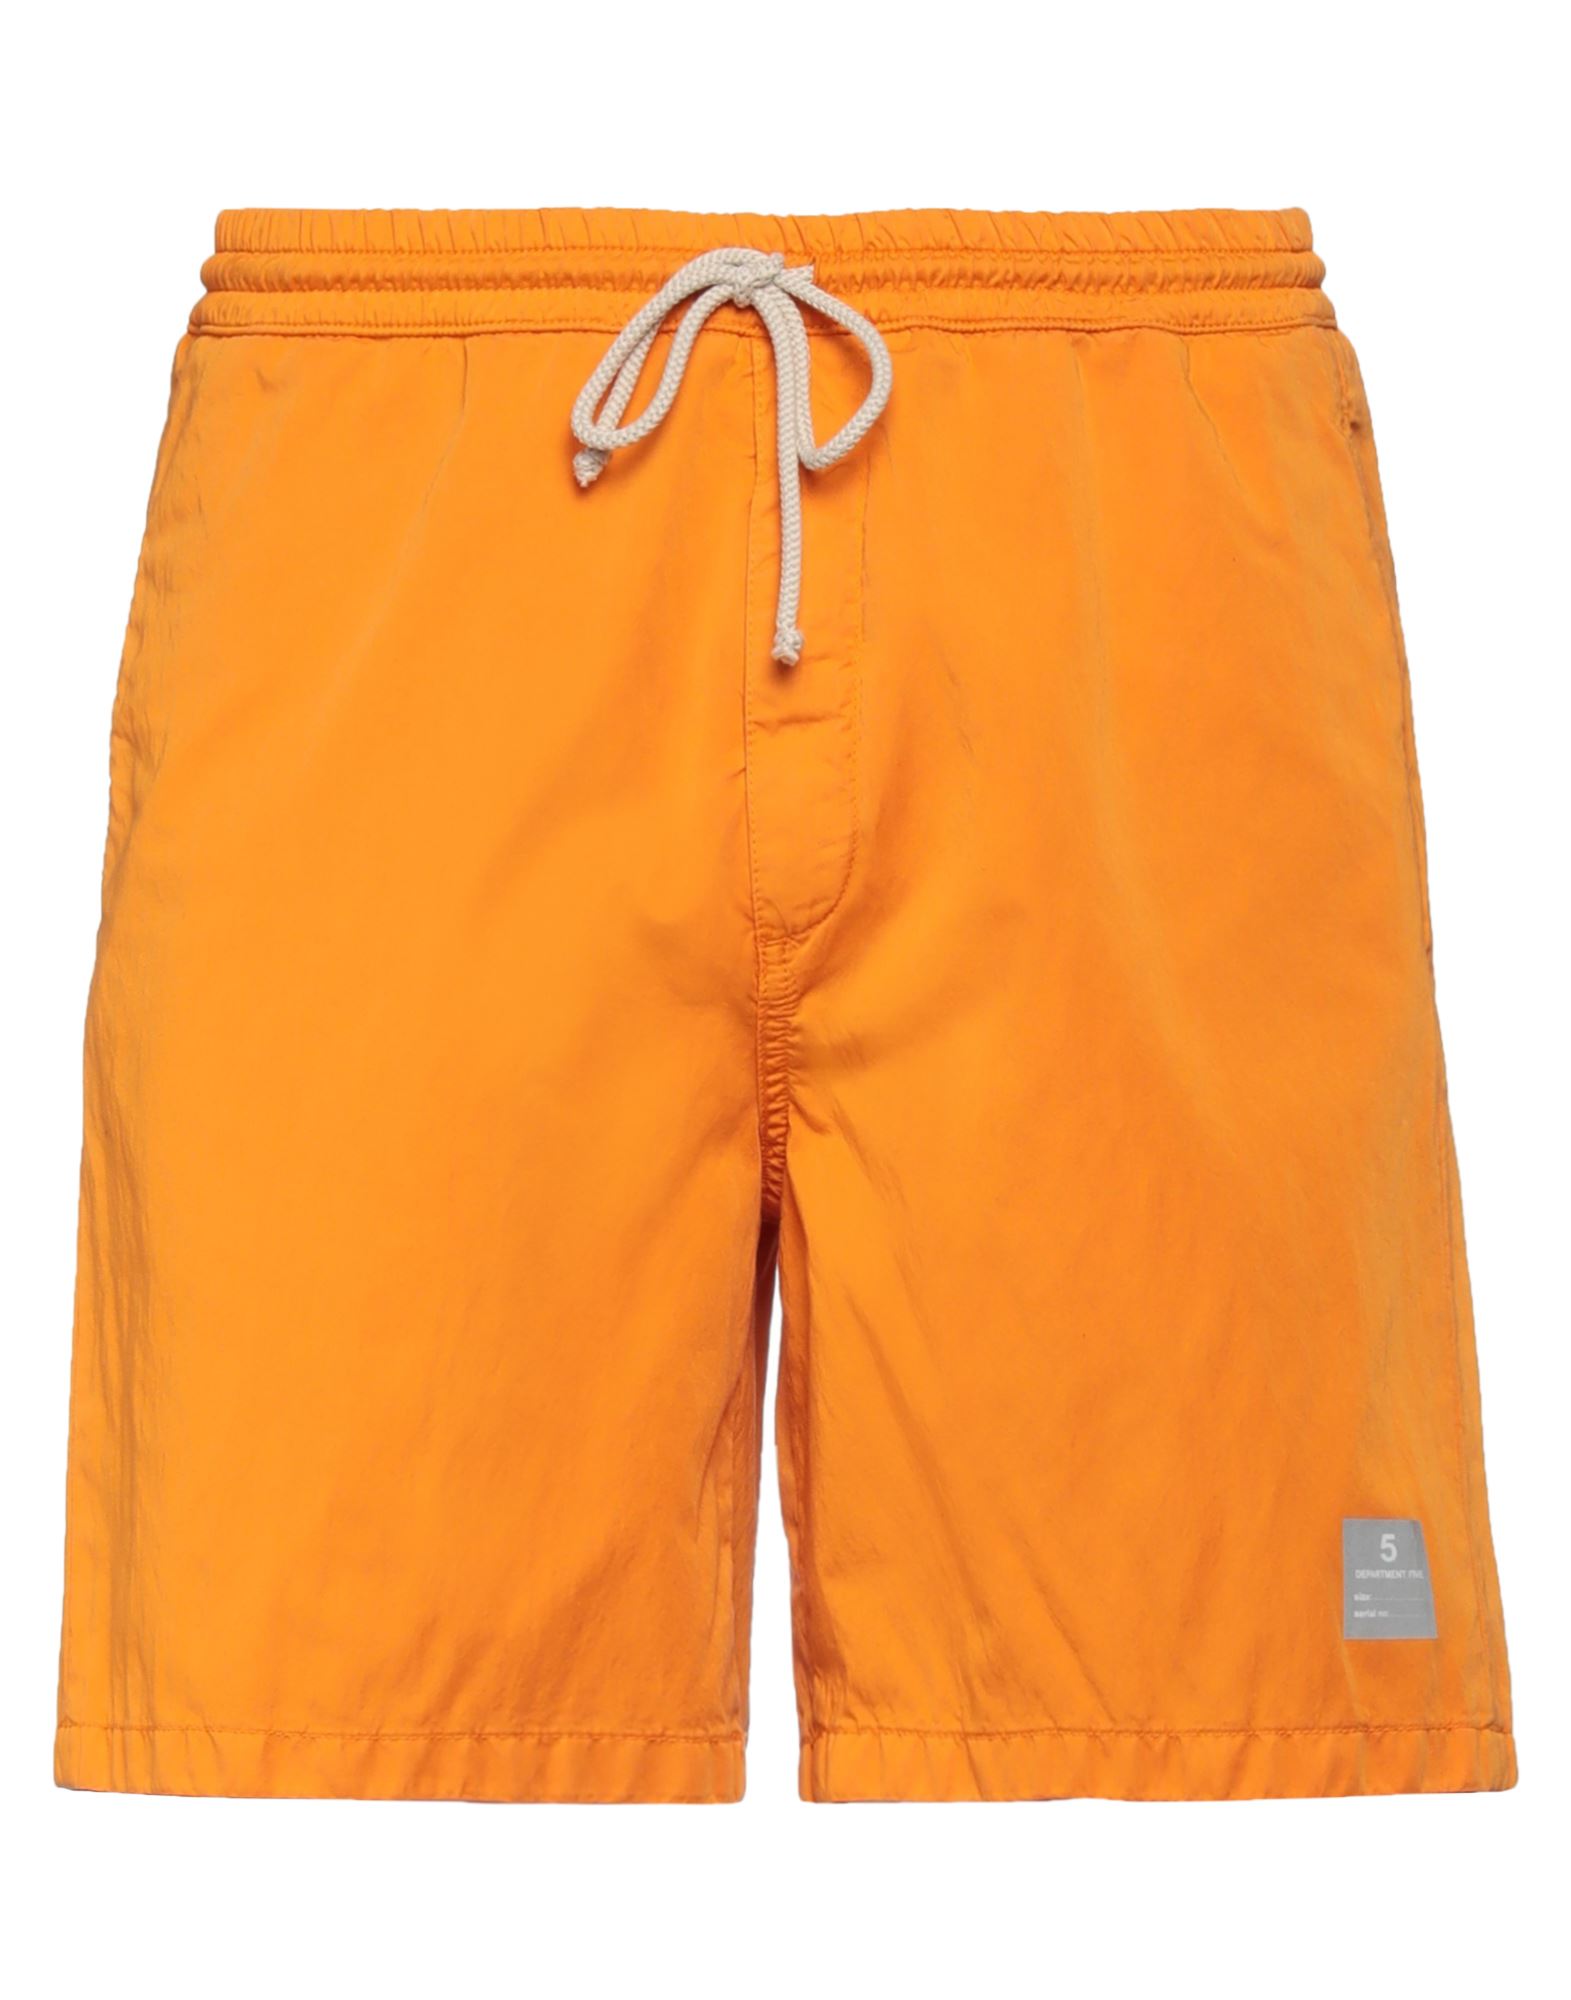 Department 5 Man Shorts & Bermuda Shorts Orange Size L Cotton, Polyamide